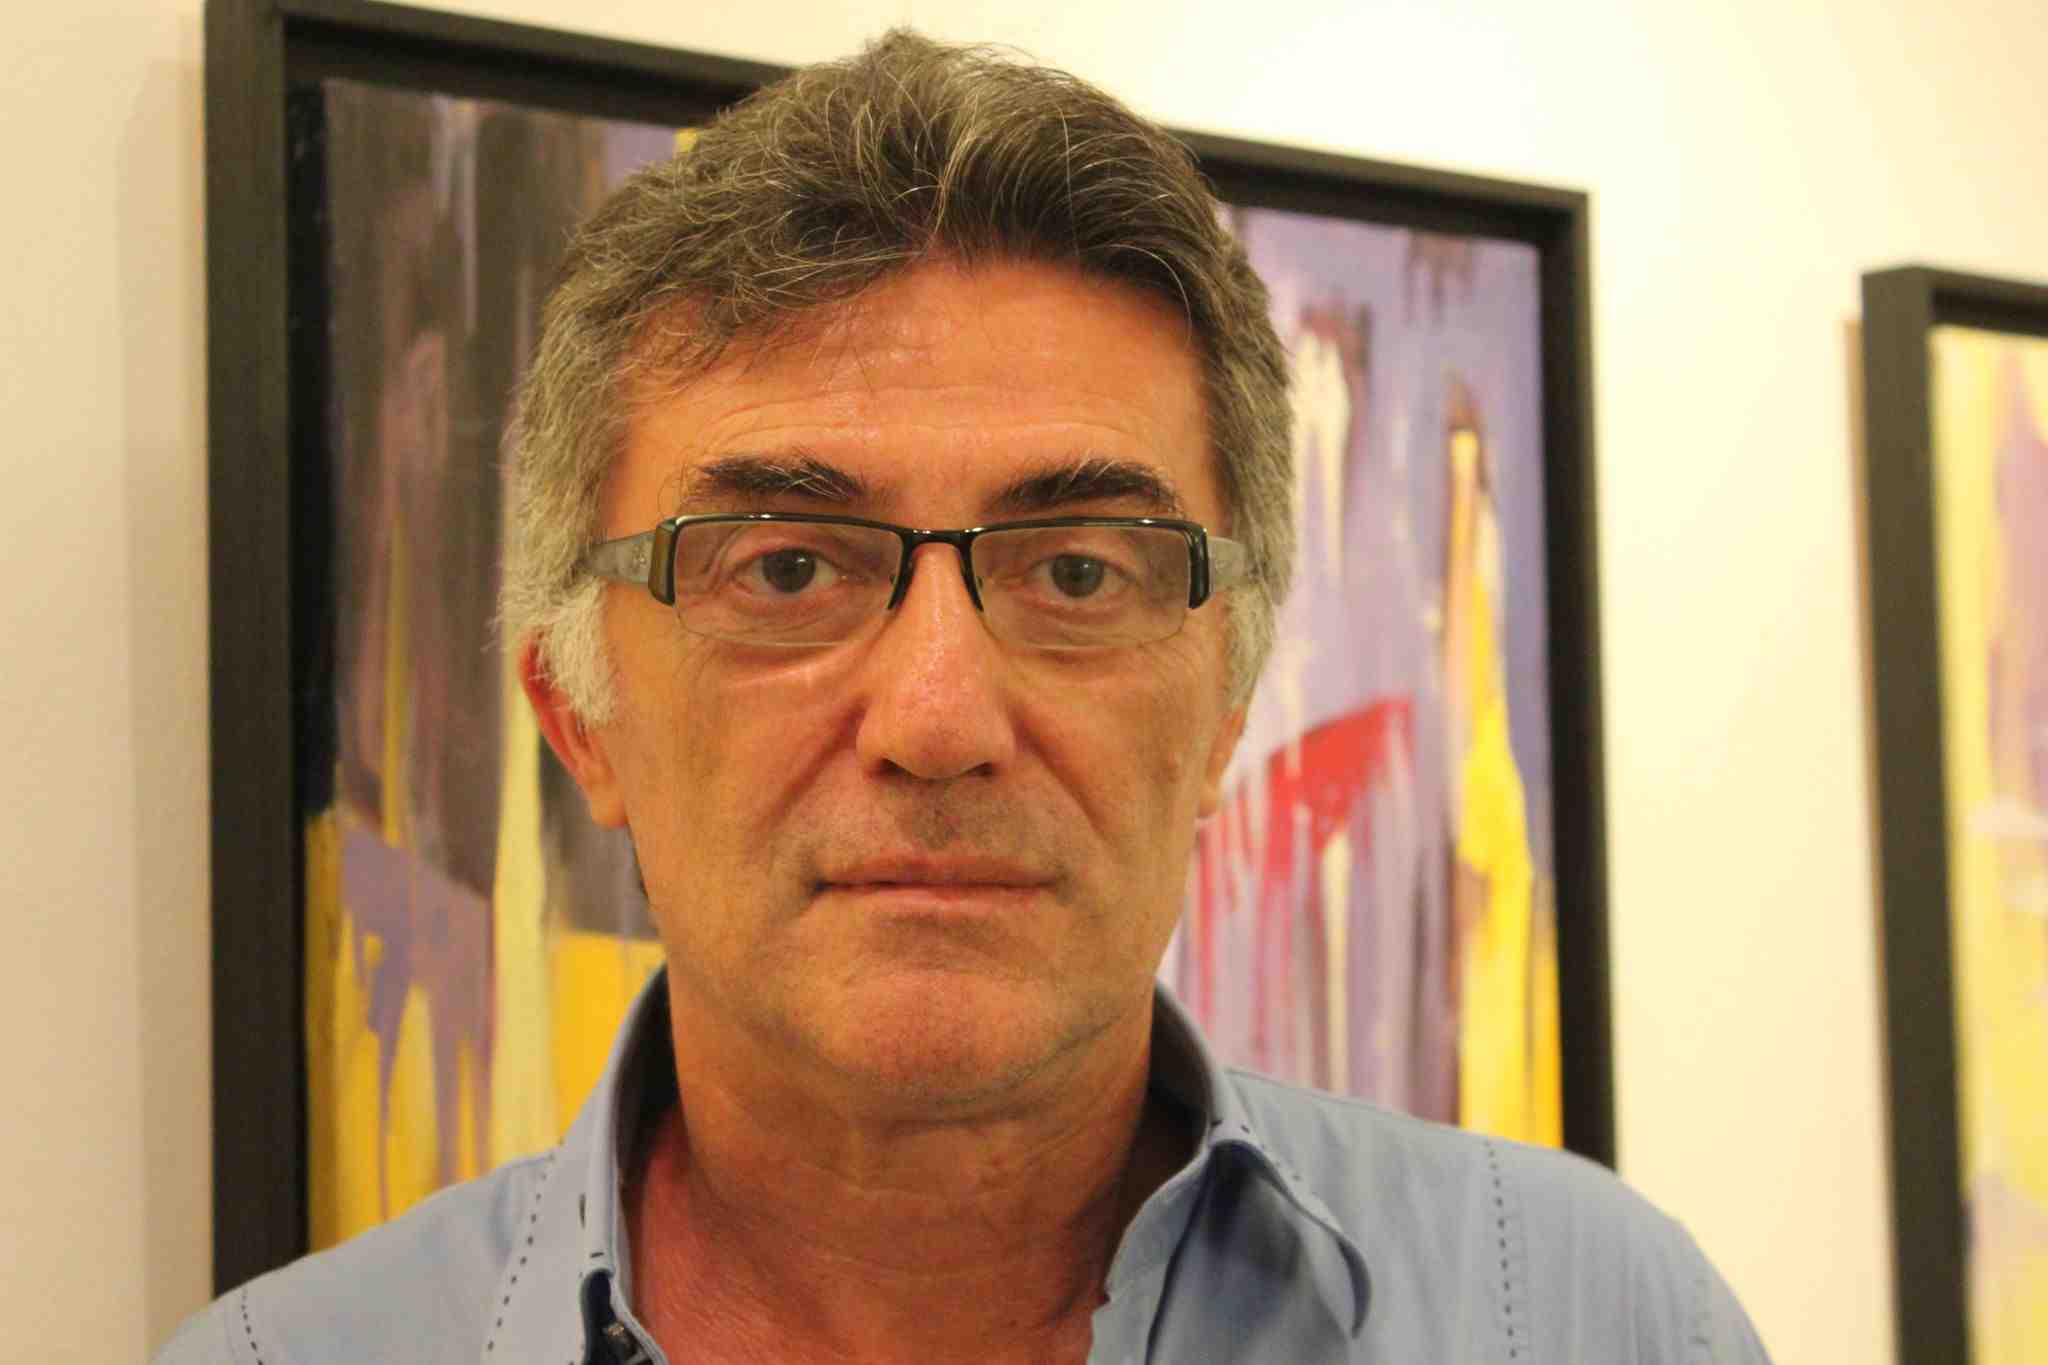 Le pitture dell'artista Roberto Di Giampaolo in mostra ad Urbino, danno lustro all'arte abruzzese